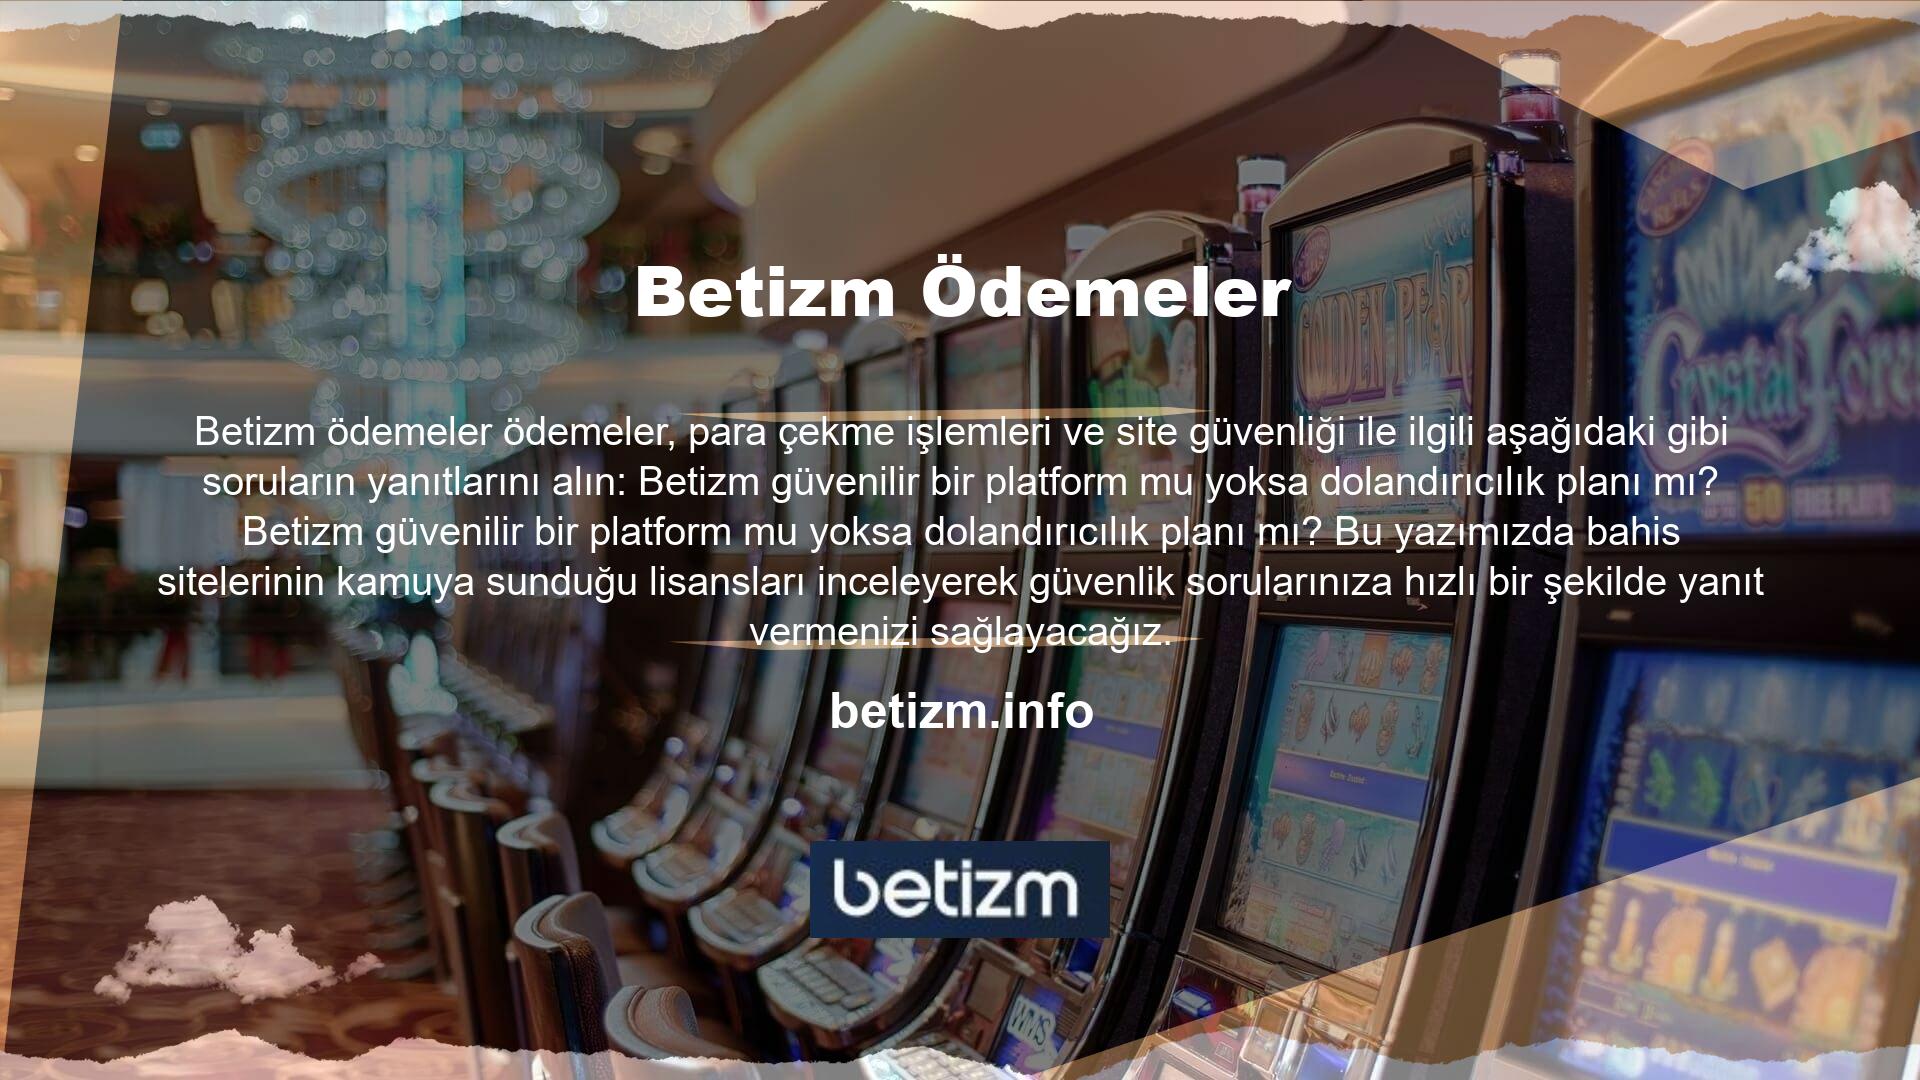 Betizm güvenilebilir mi? Türkiye casino sektöründe aktif olarak yer almaktadır